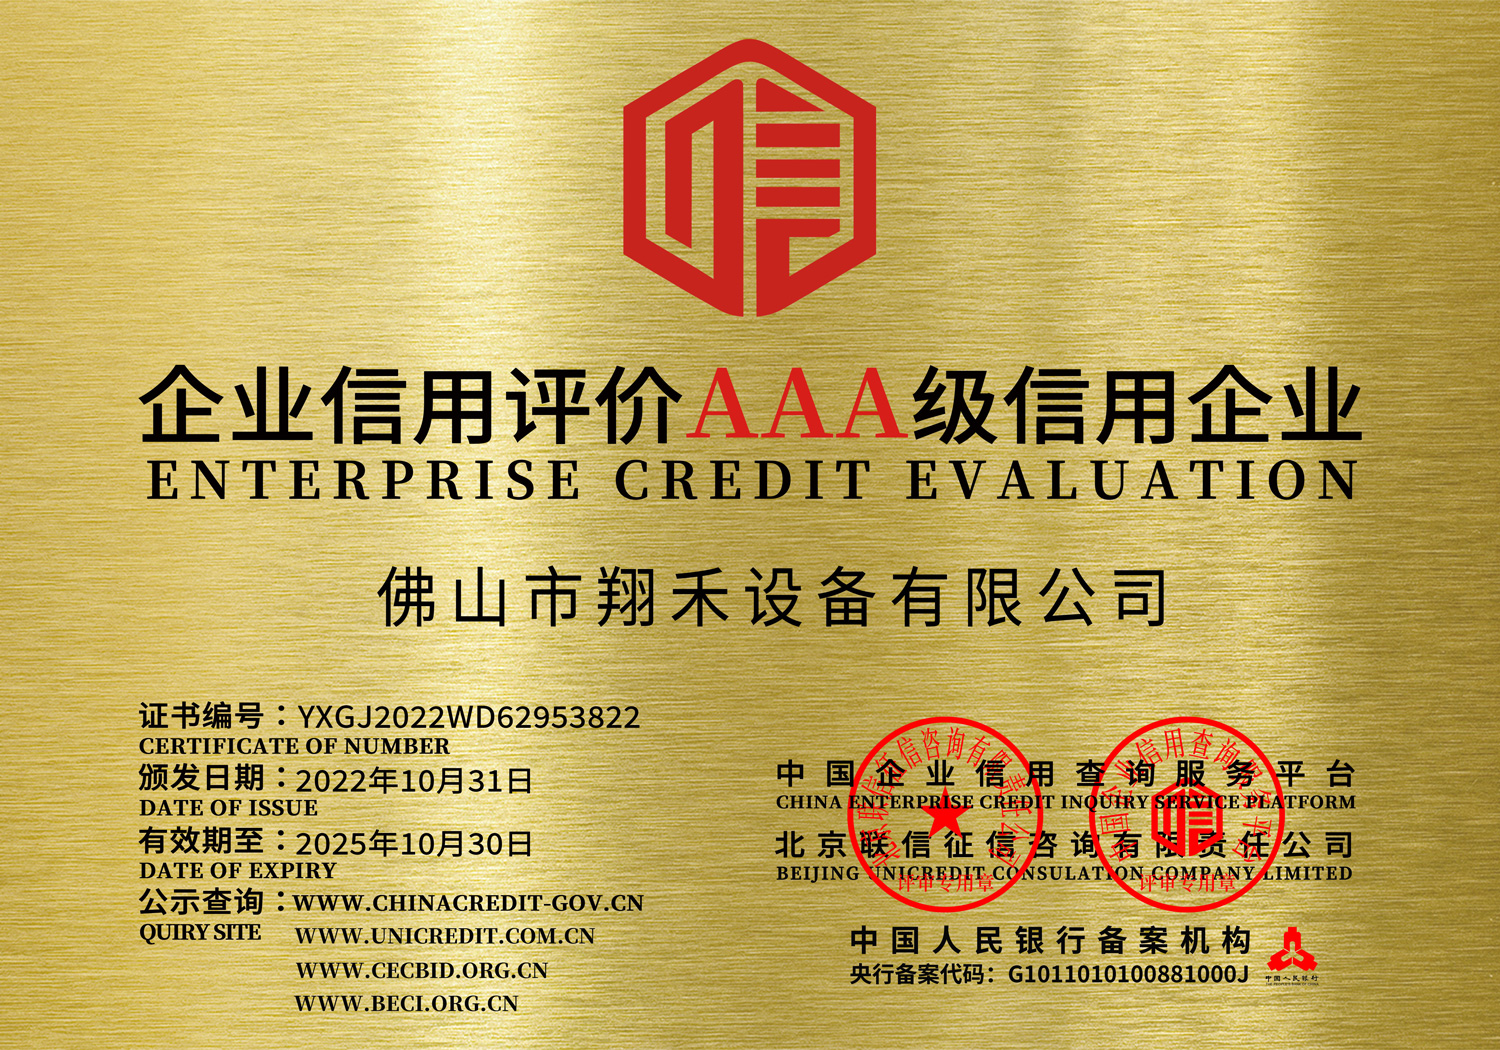 企业信用评价AAA级信用企业8